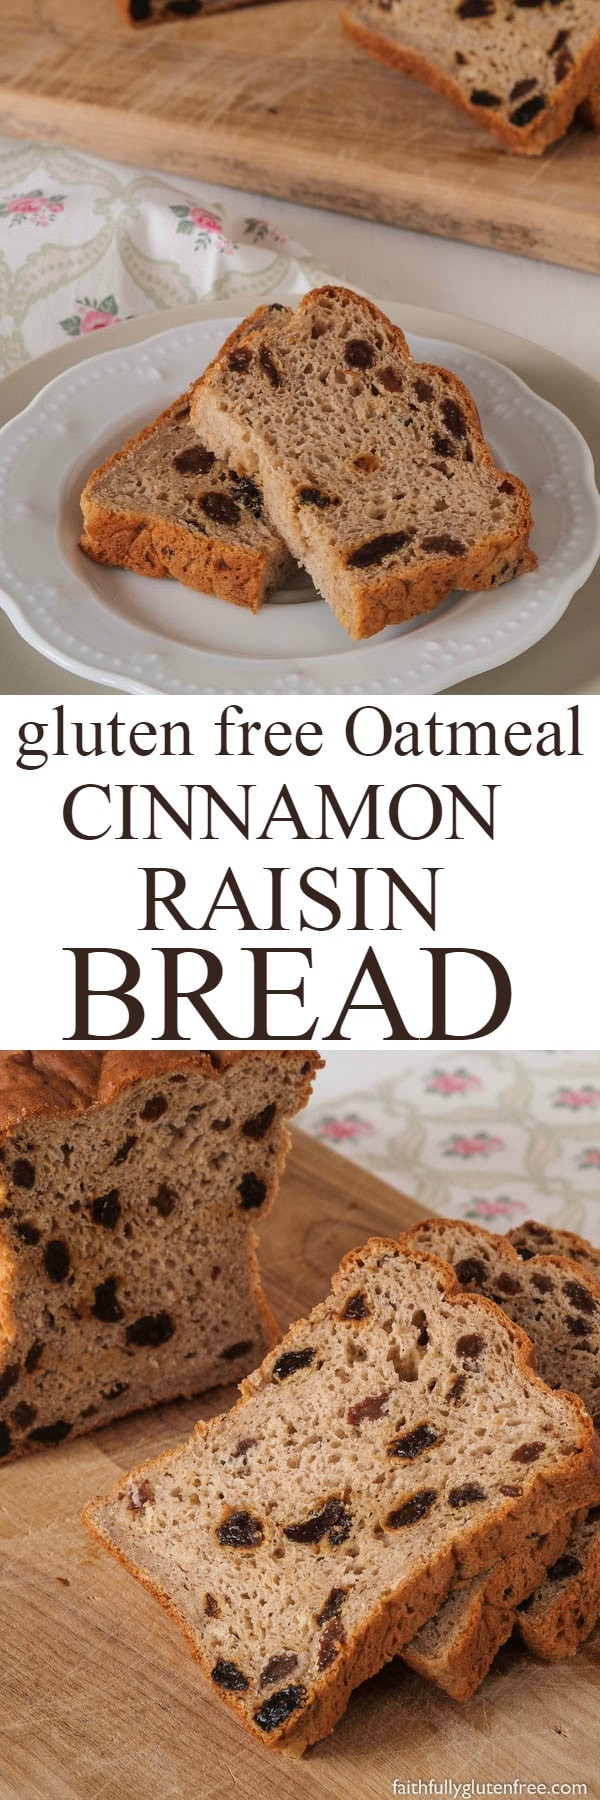 Gluten Free Oatmeal Bread
 Gluten Free Oatmeal Cinnamon Raisin Bread Faithfully